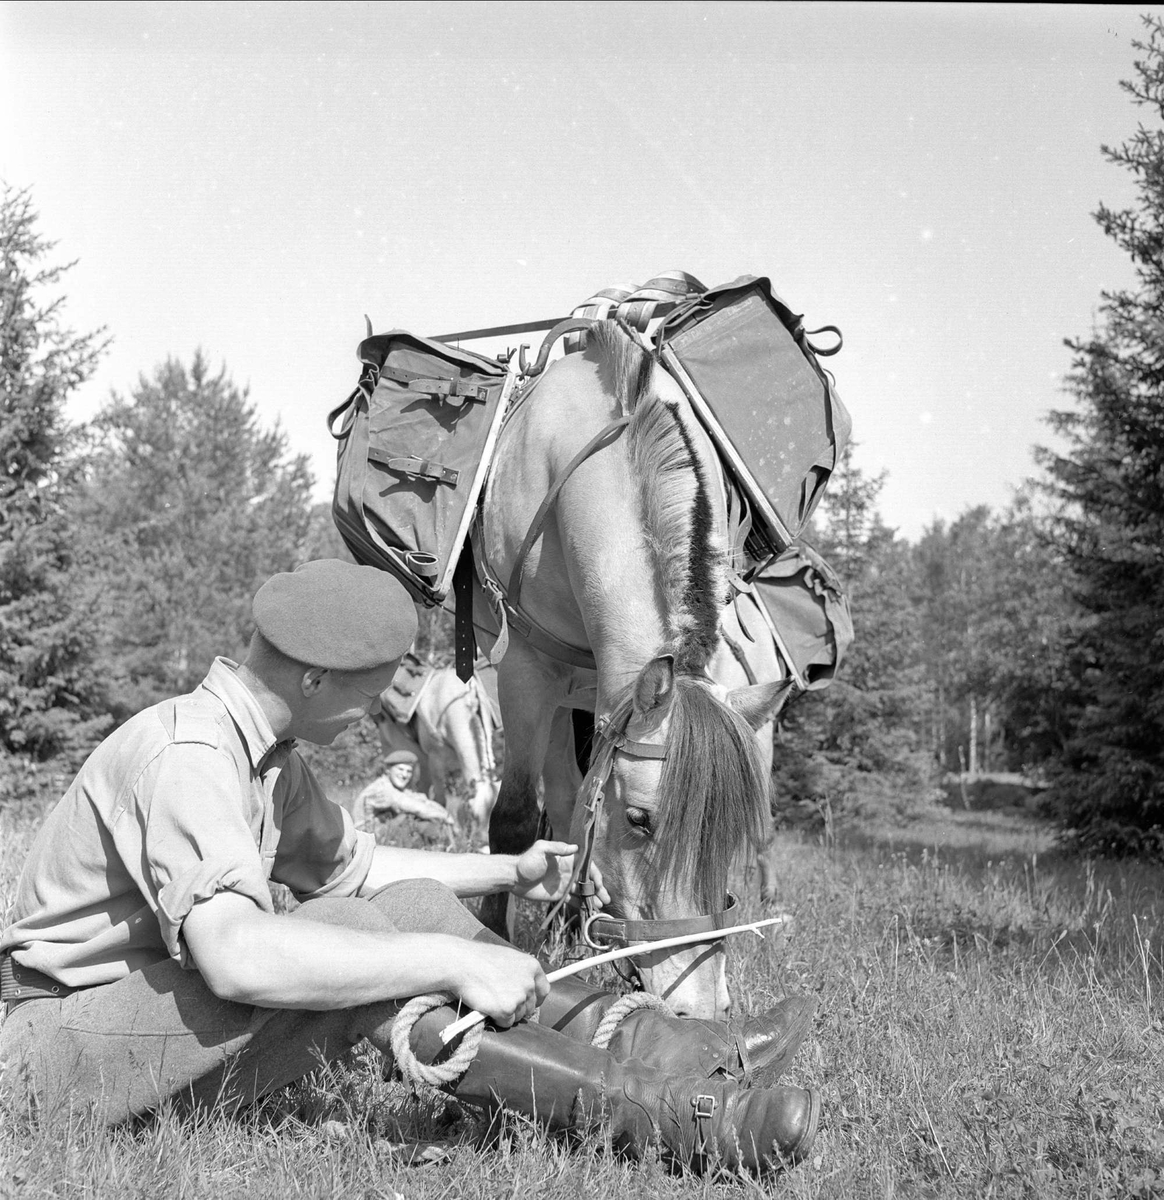 Starum, Østre Toten, Oppland, 07.07.1956. Soldat og pakkhest i skogen.